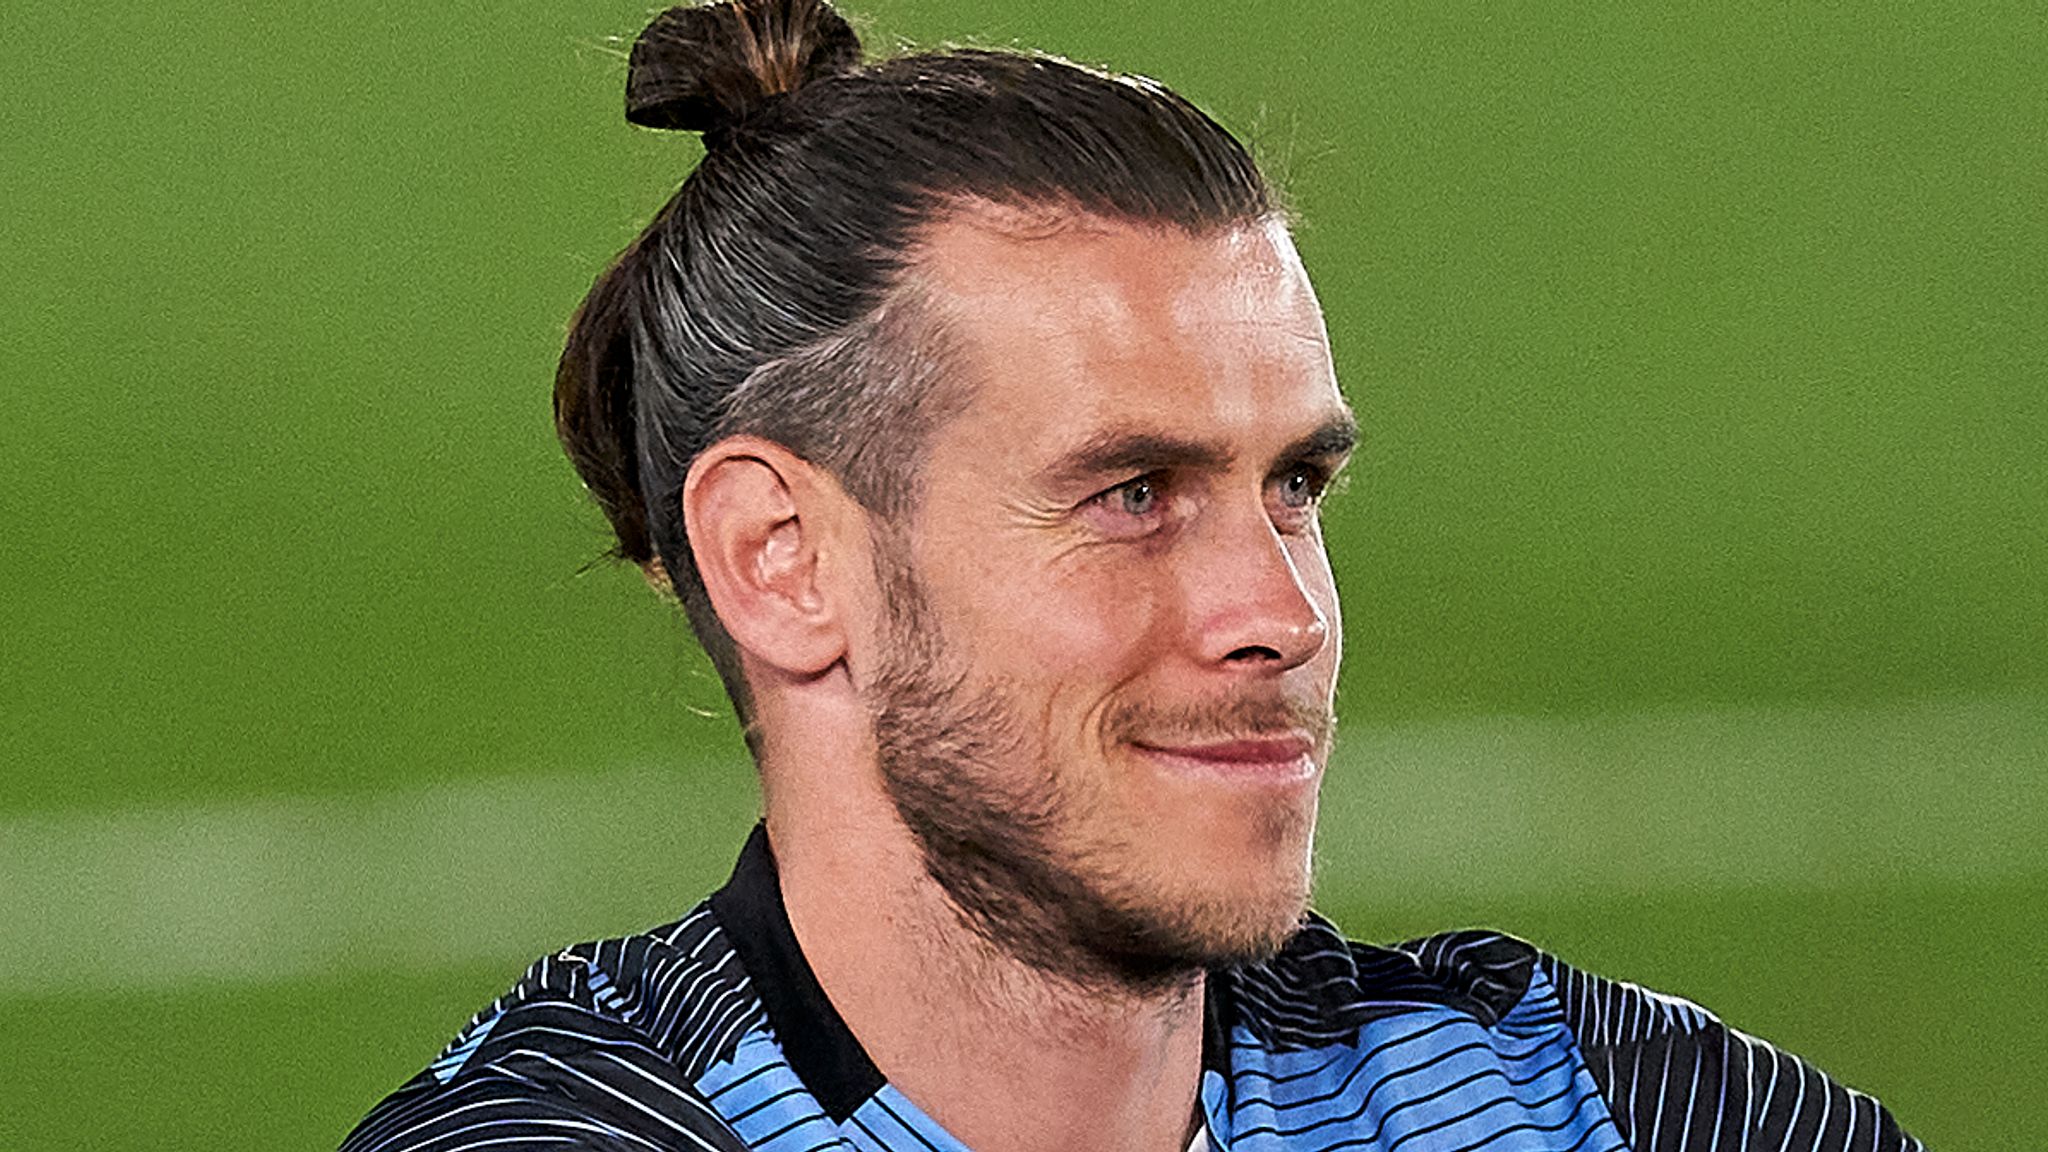 Gareth Bale must cut his hair